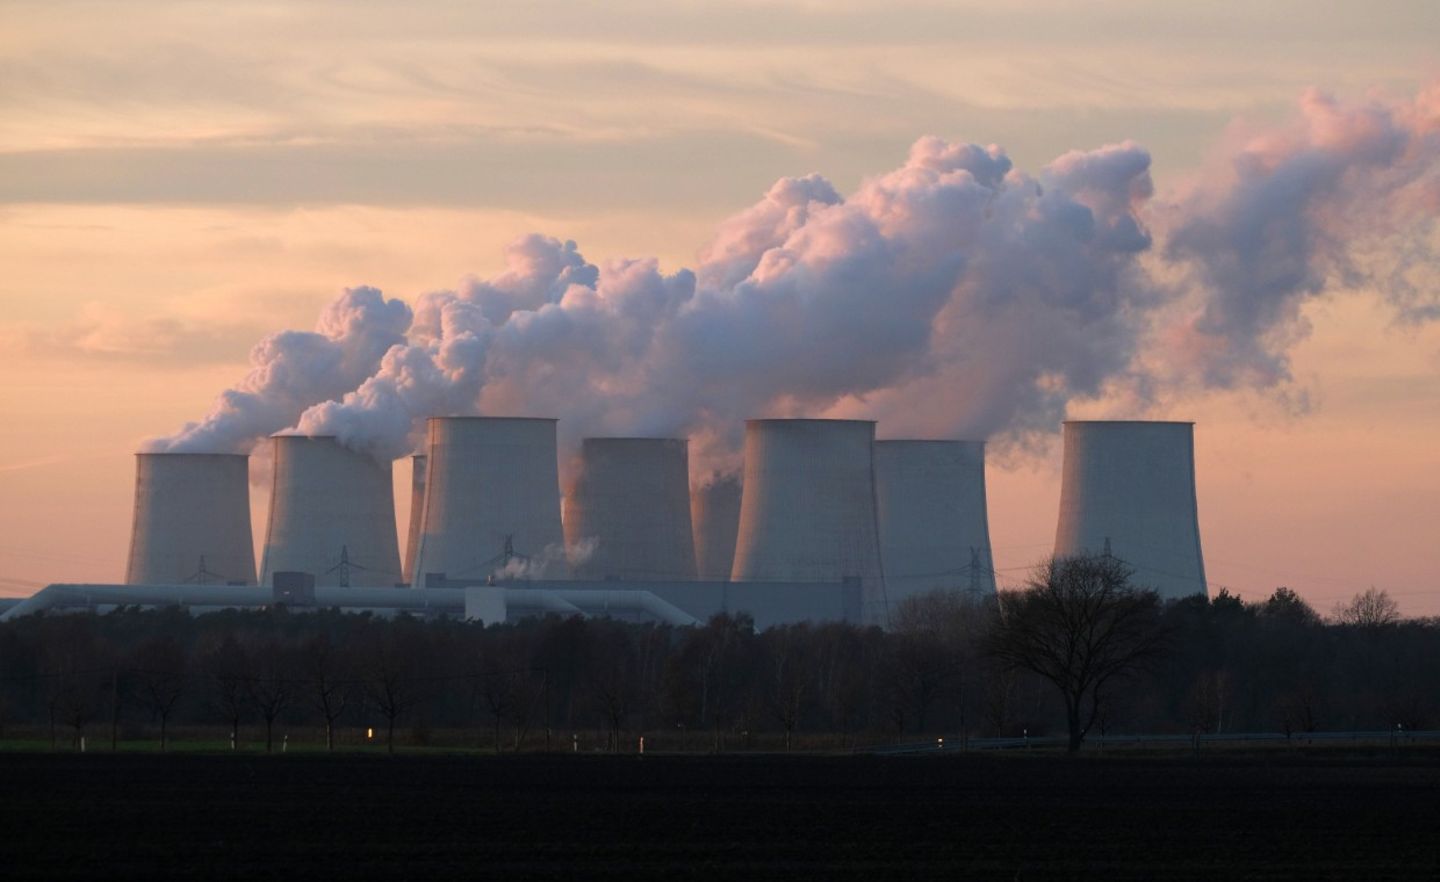 Dampf steigt aus den Kühltürmen des Kohlekraftwerks Jänschwalde. Das Kraftwerk gehört zu den größten CO2-Emittenten in Europa